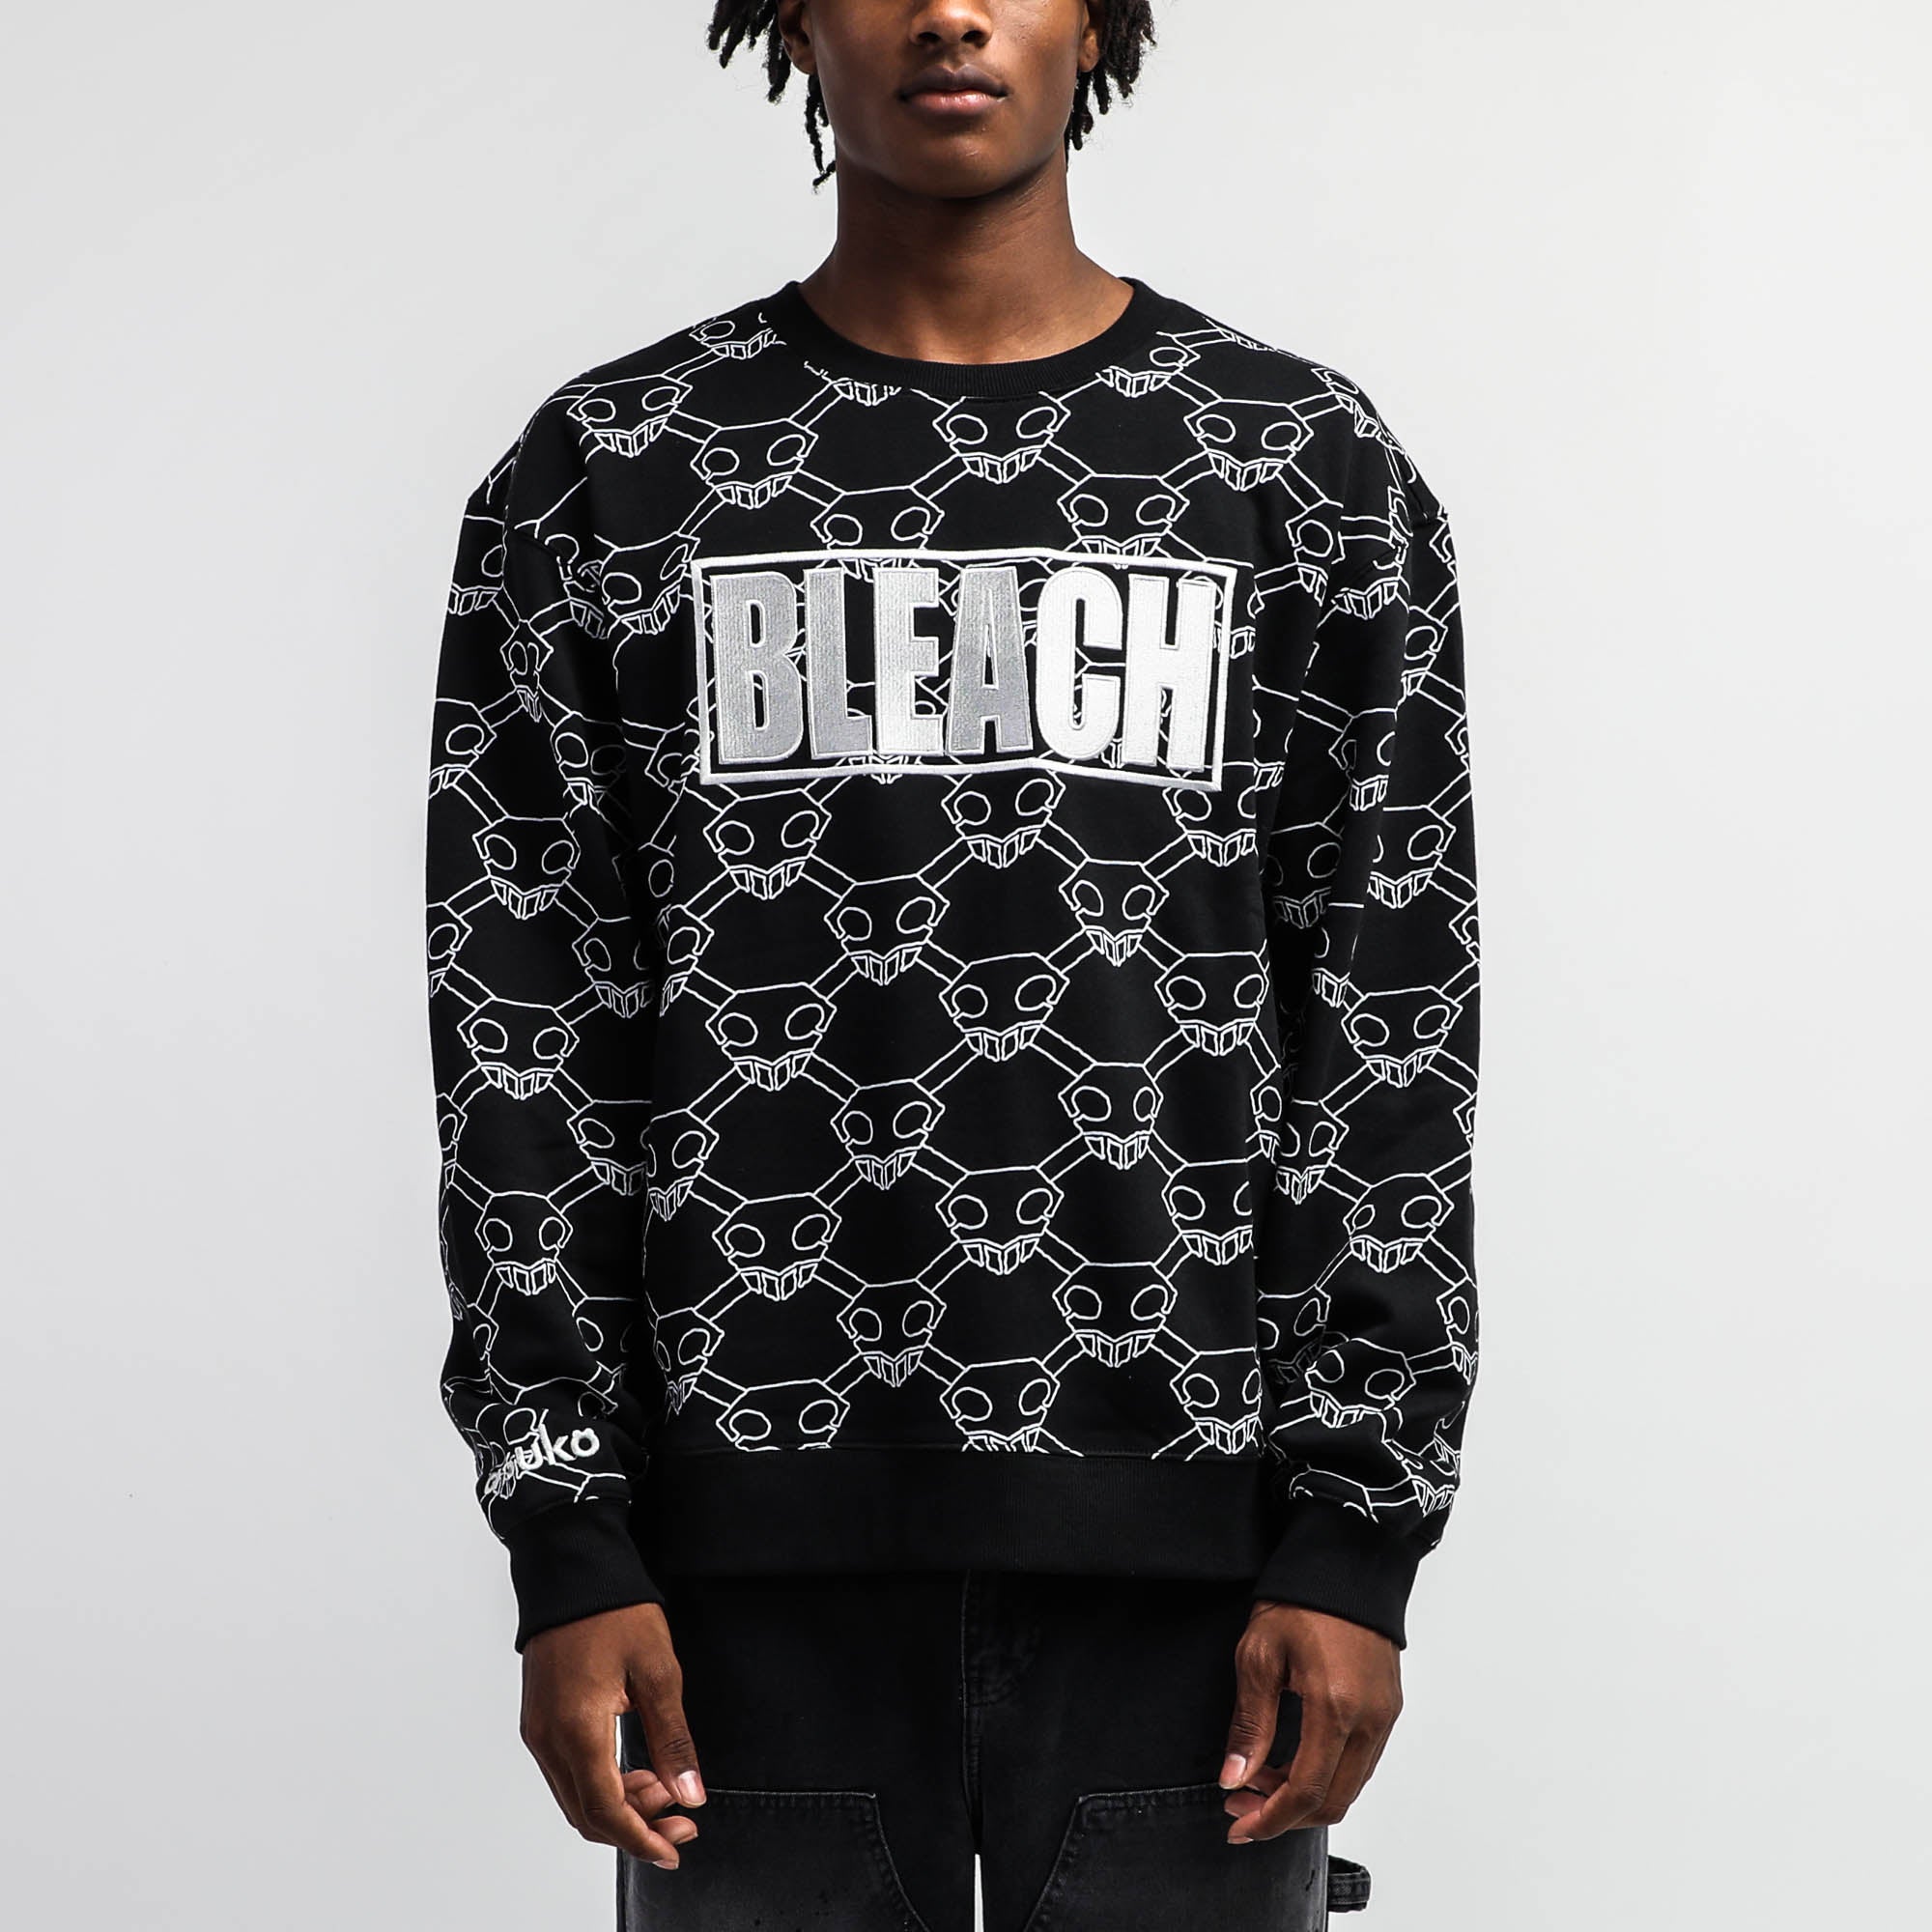 BLEACH Black Crew Neck Sweatshirt